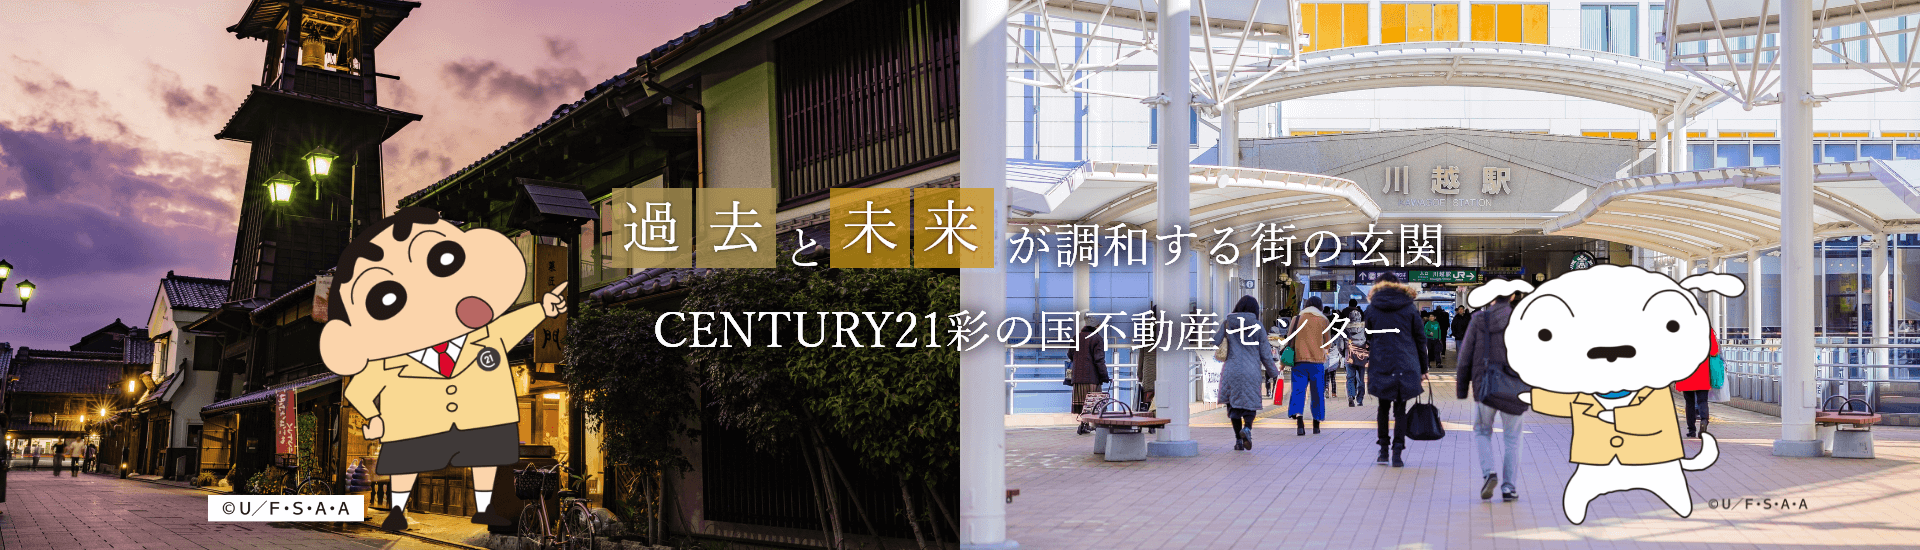 過去と未来が調和する待ちの玄関 CENTURY21彩の国不動産センター